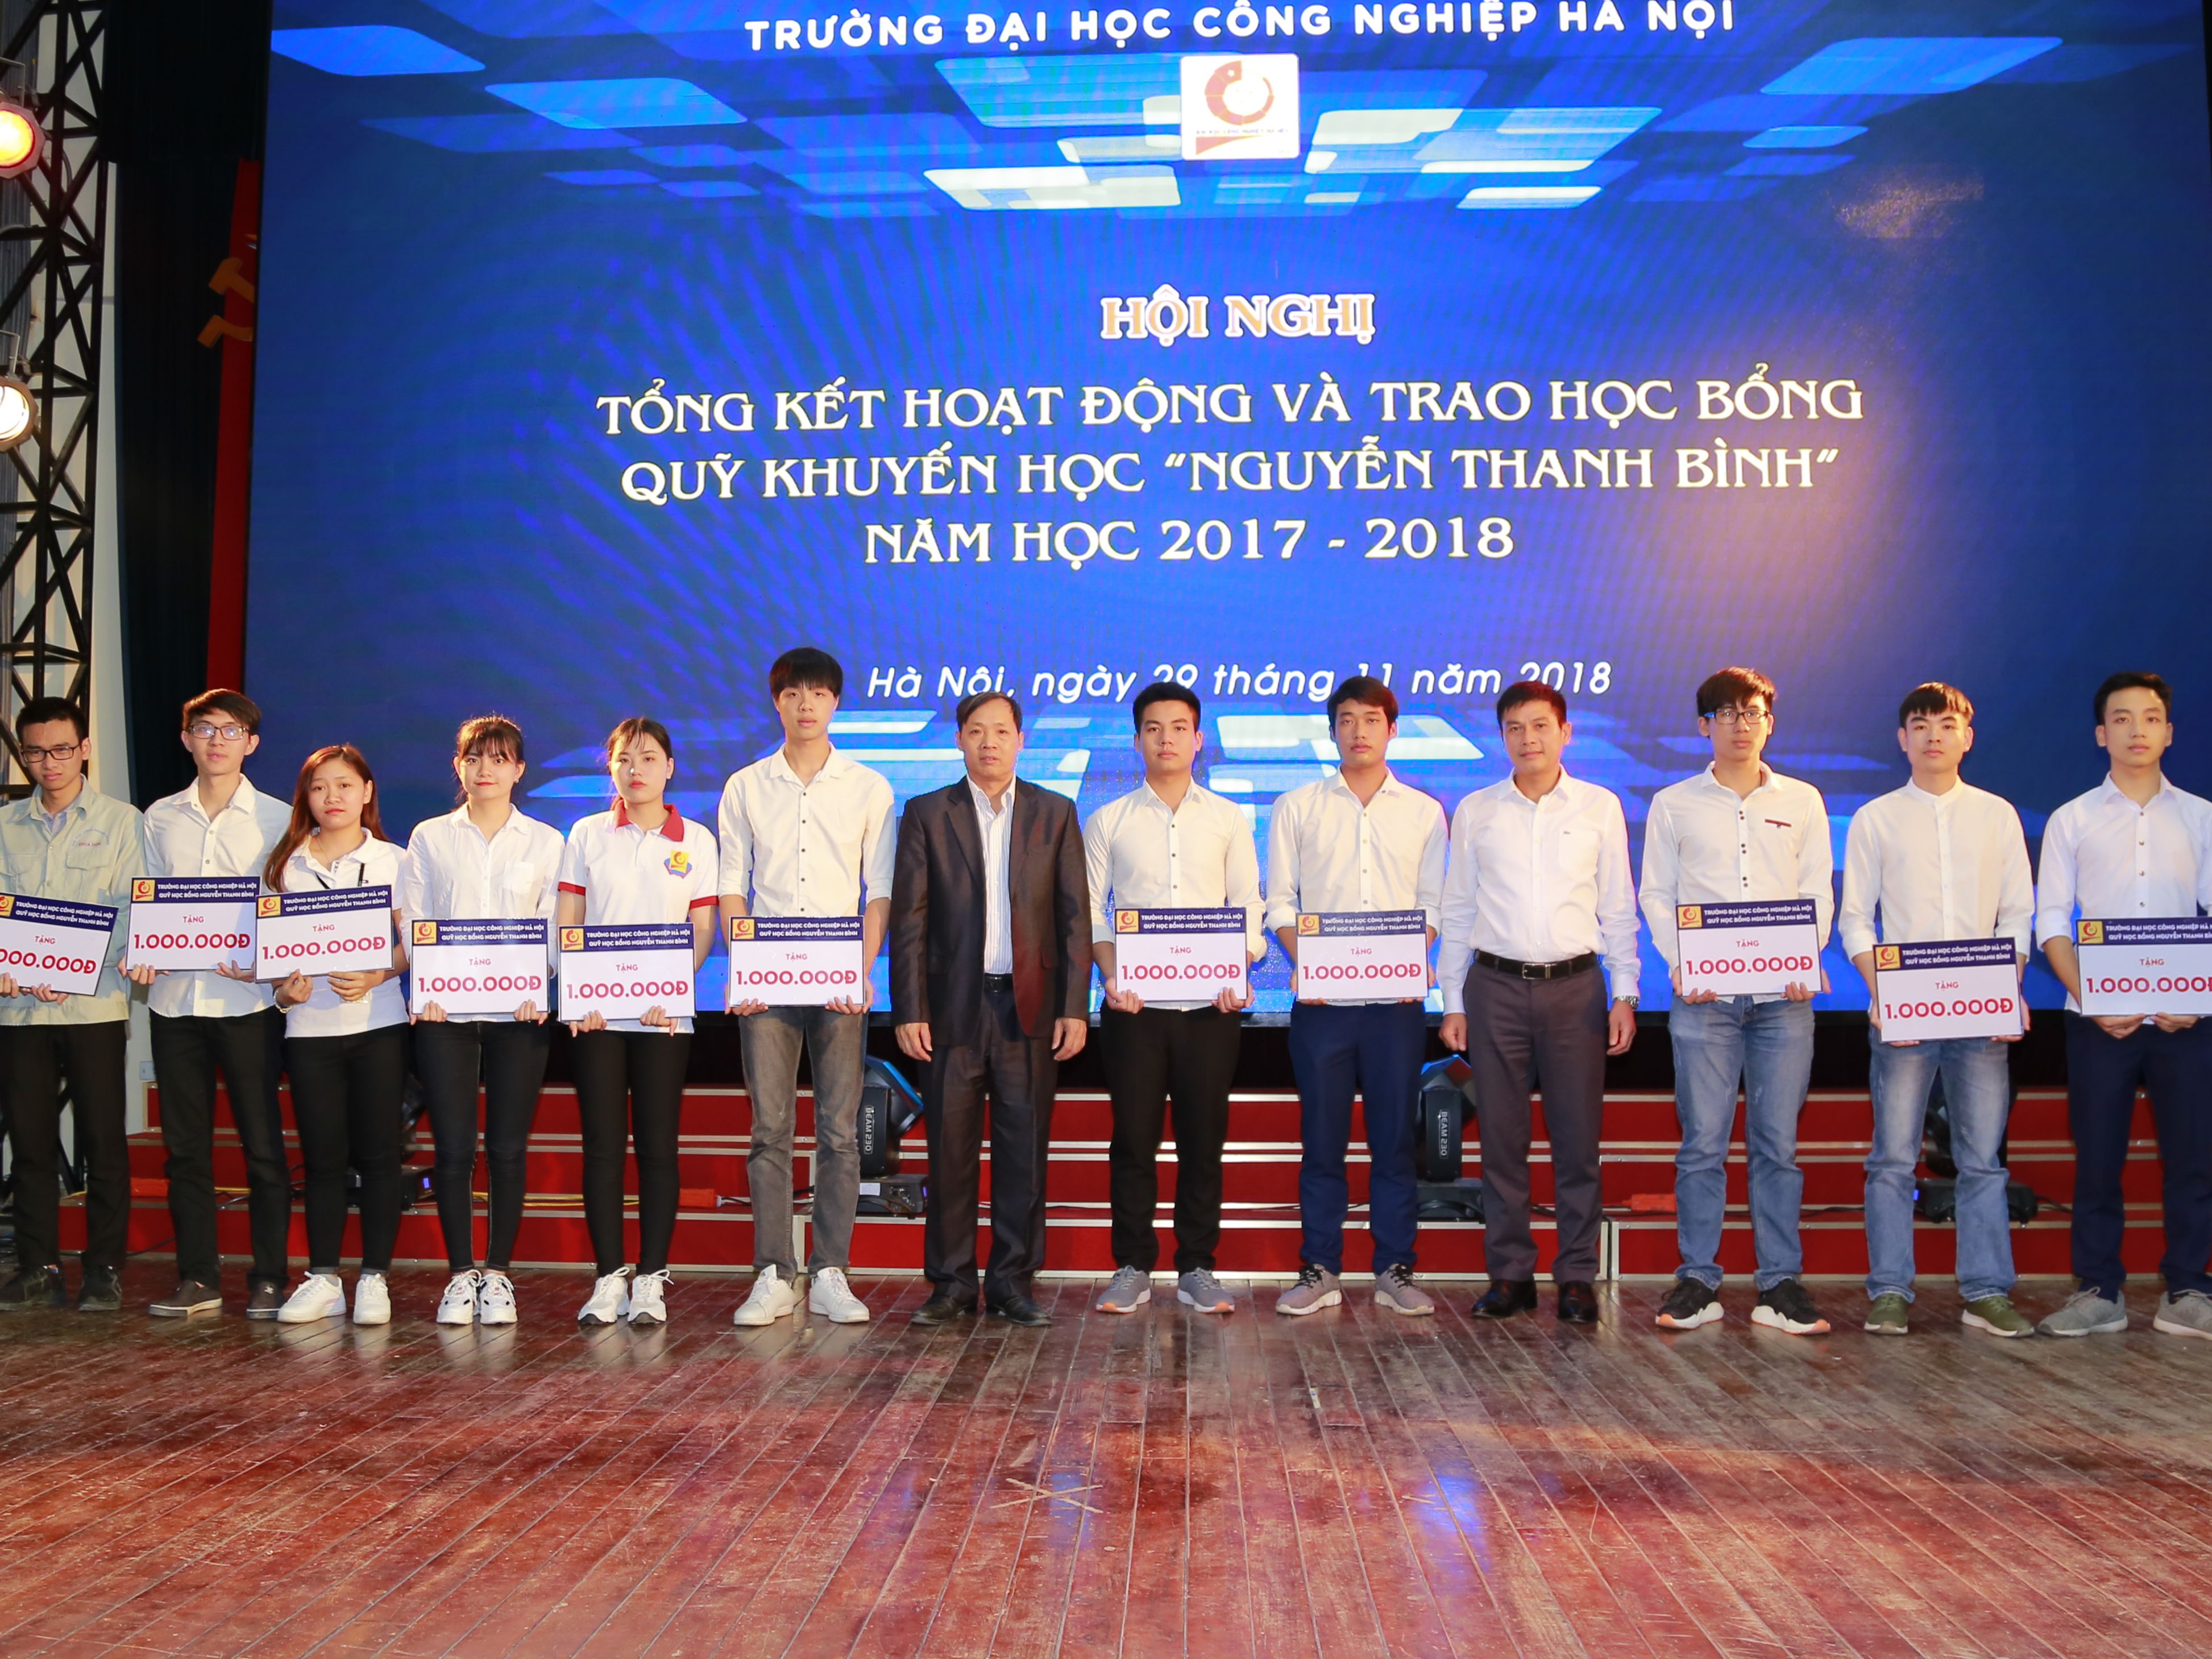 Tổng kết hoạt động và trao học bổng Quỹ khuyến học "Nguyễn Thanh Bình" năm học 2017-2018